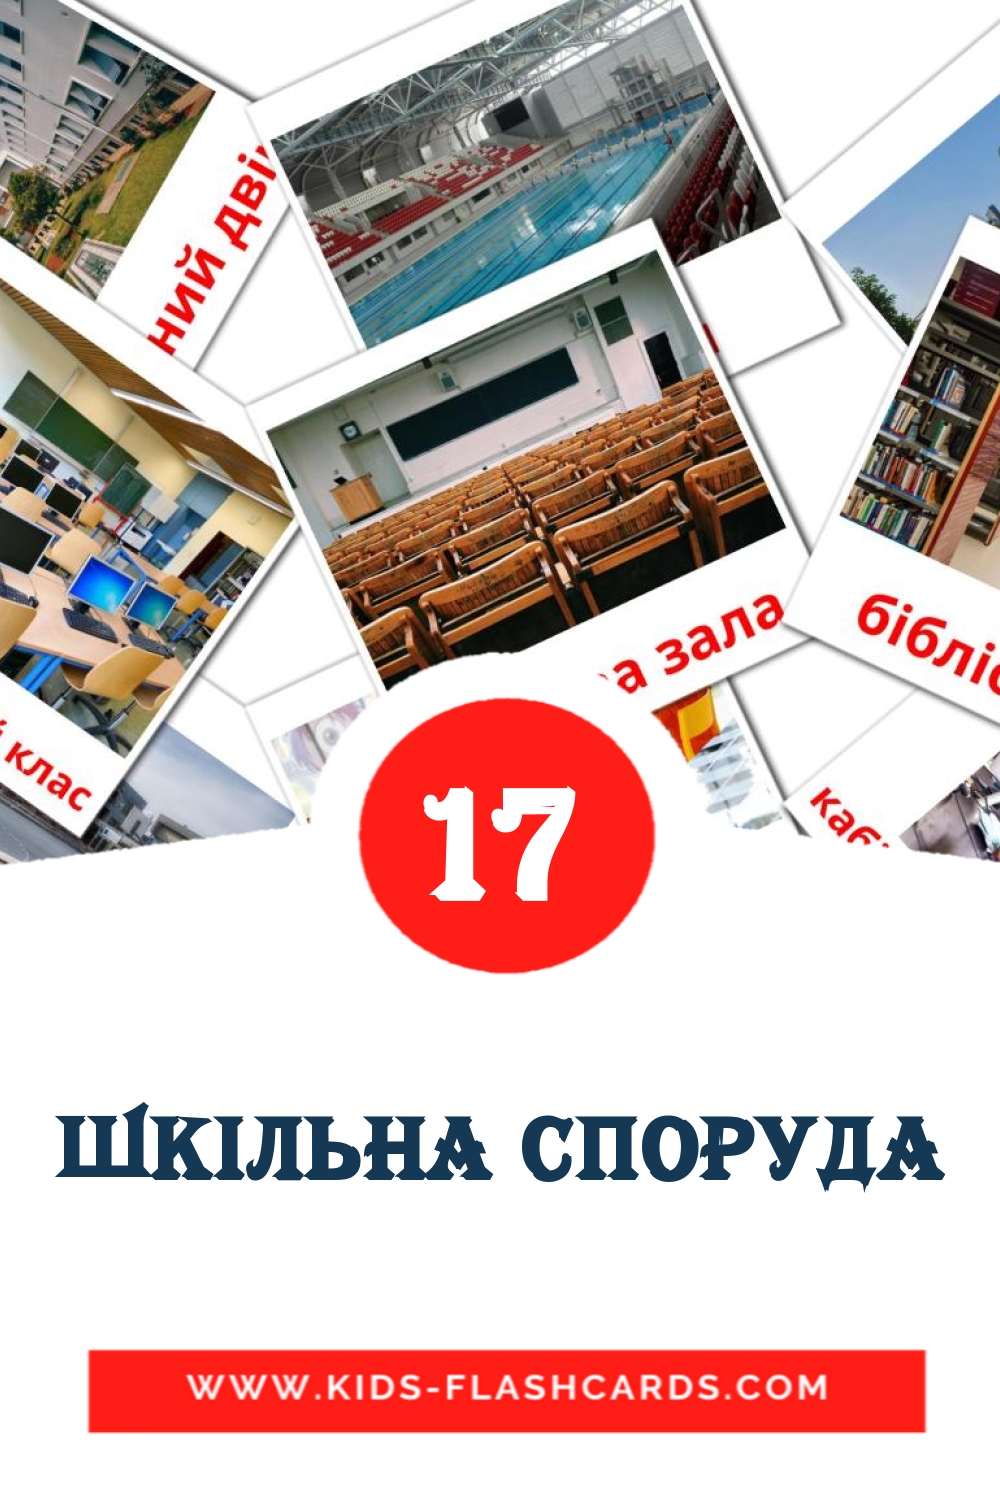 Шкiльна споруда на украинском для Детского Сада (17 карточек)